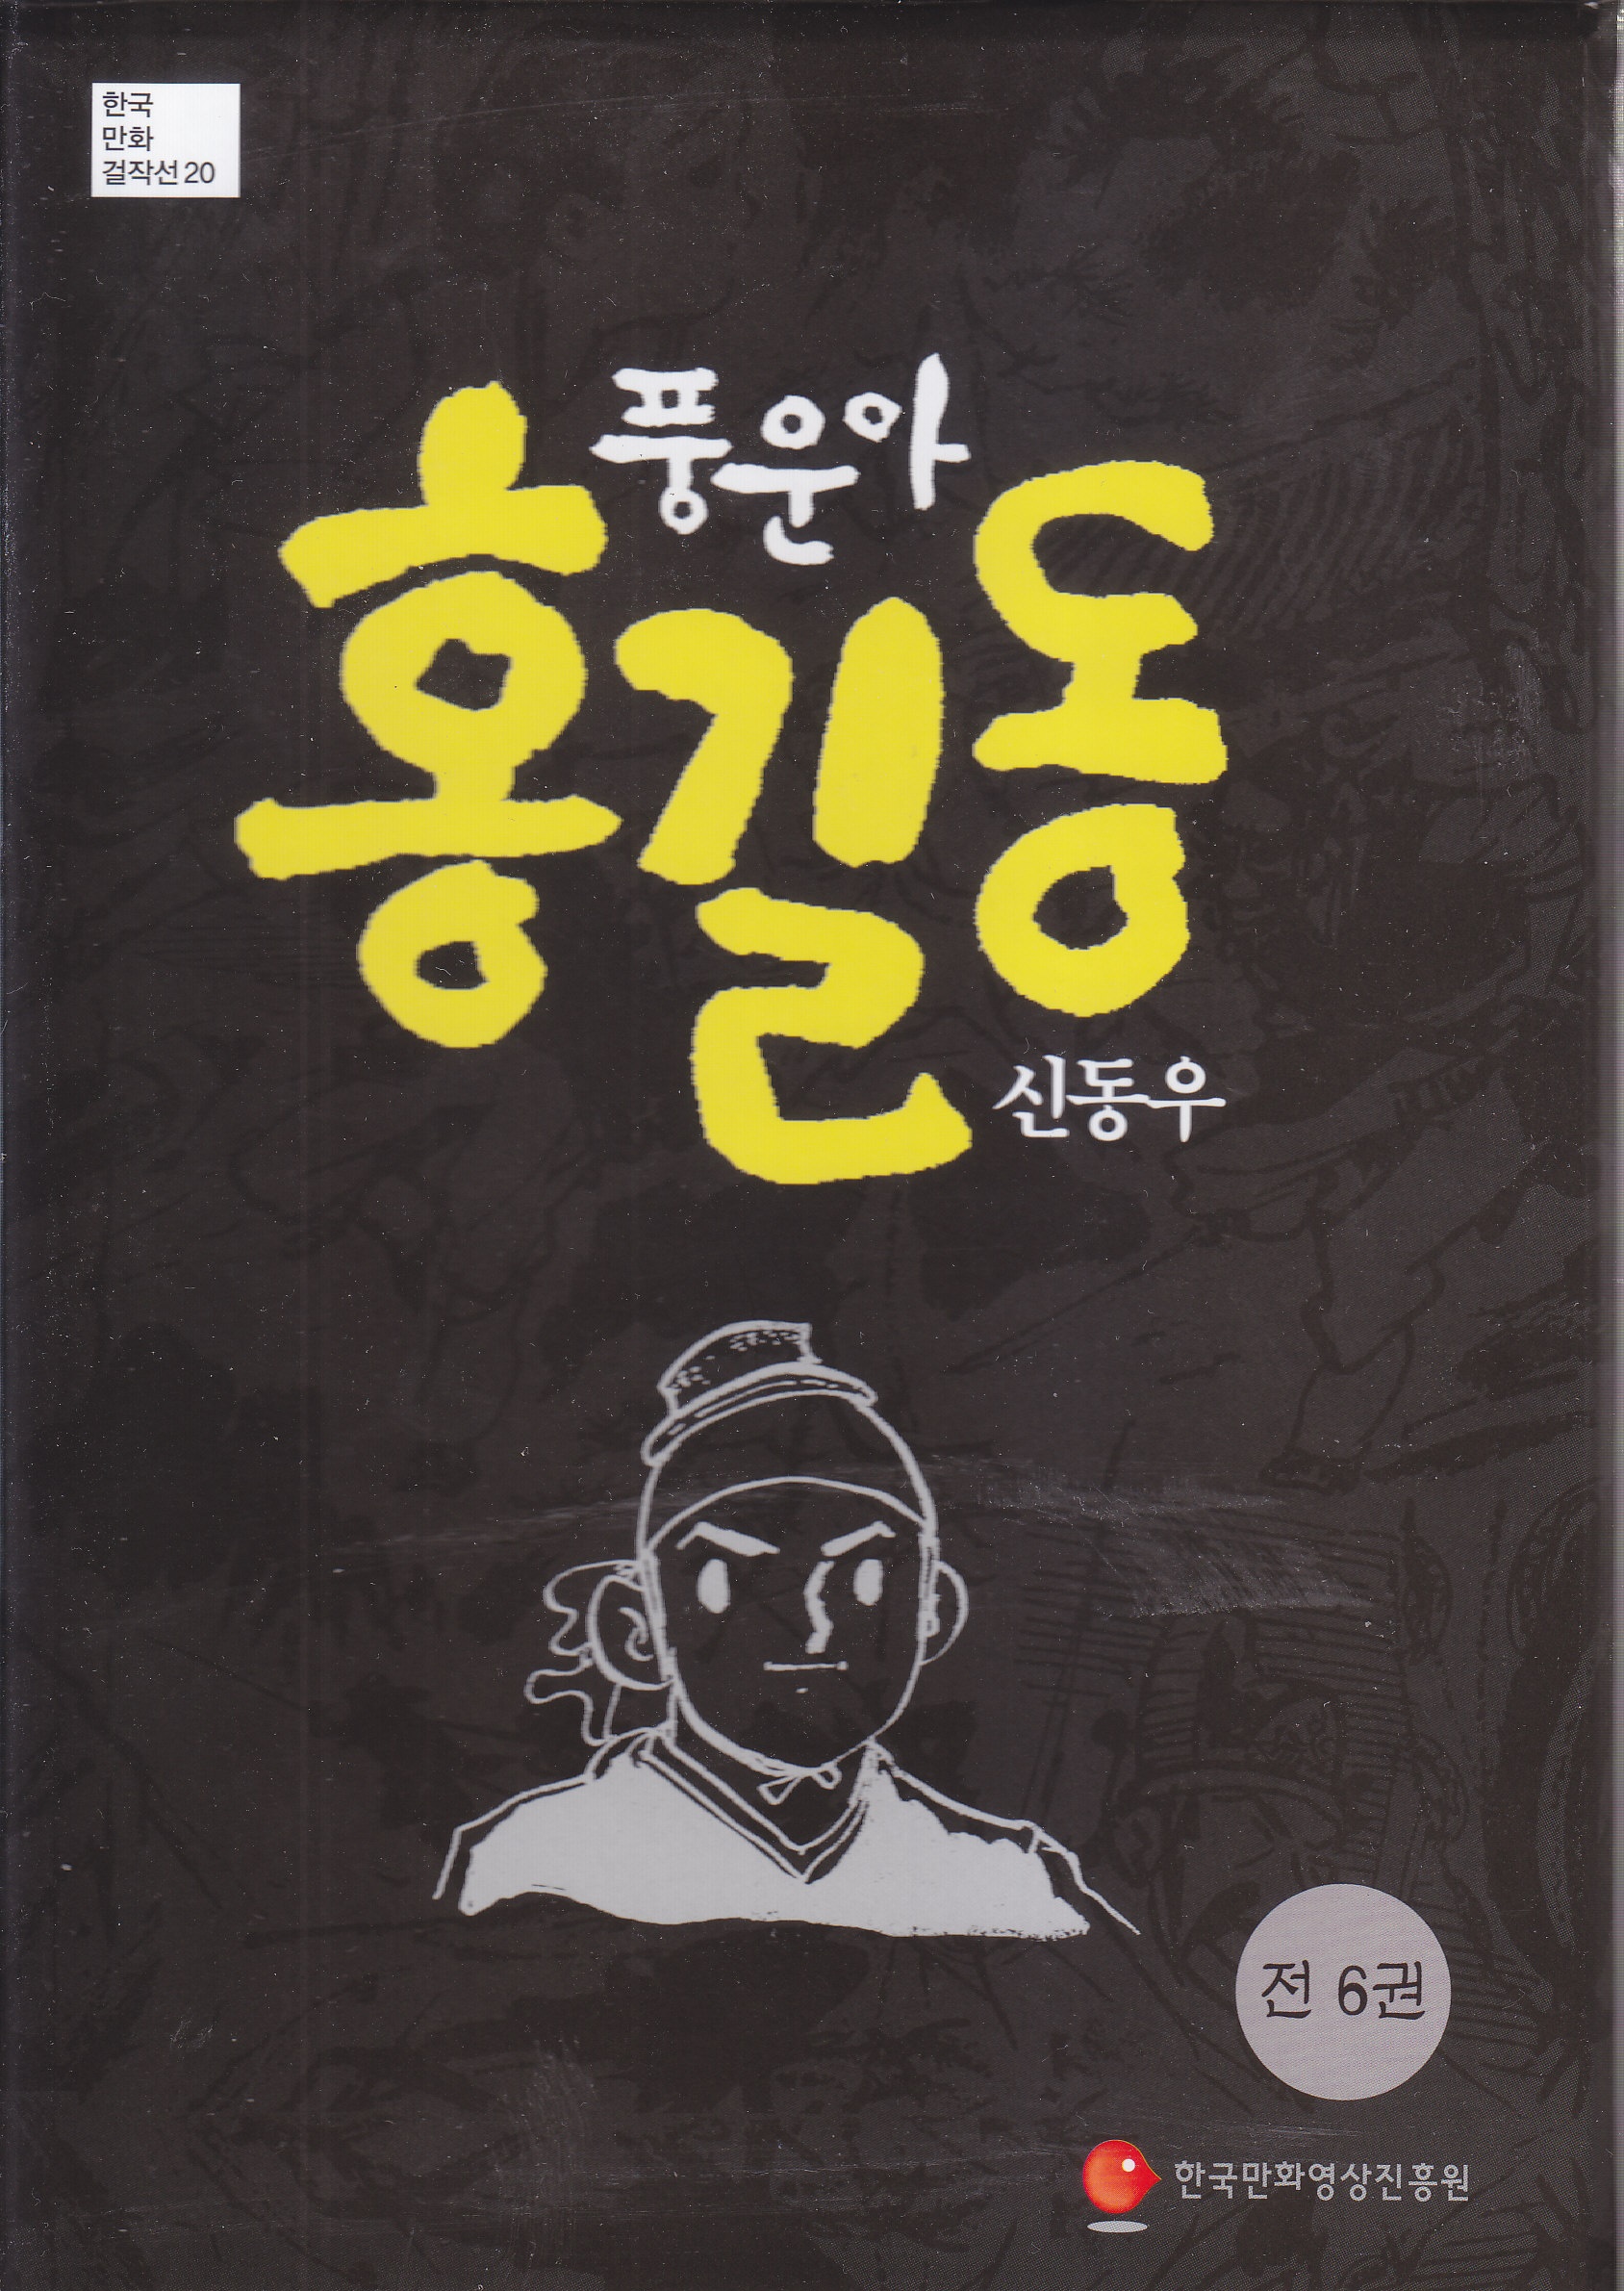 [재업] [풍운아 홍길동] 조선 중엽 소설에 올려놓은 소년만화의 어레인지